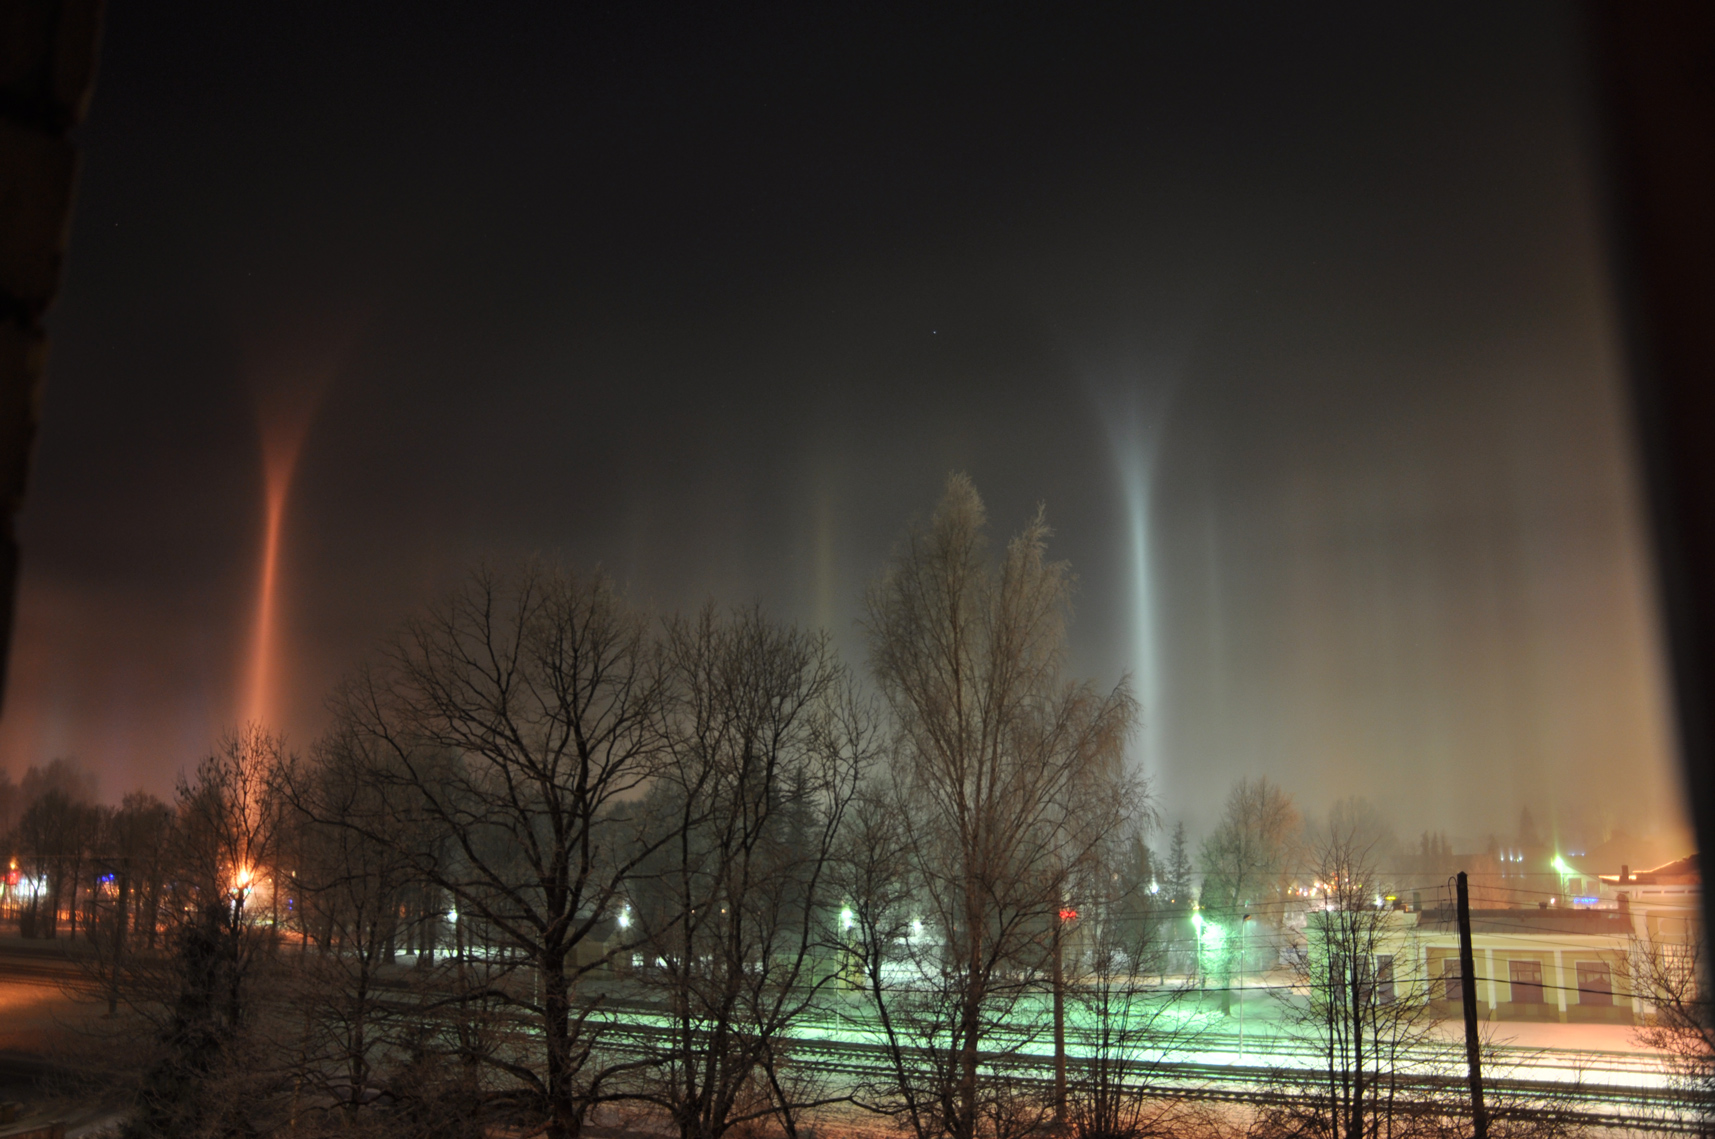 Insolites piliers de lumière au-dessus de la Lettonie